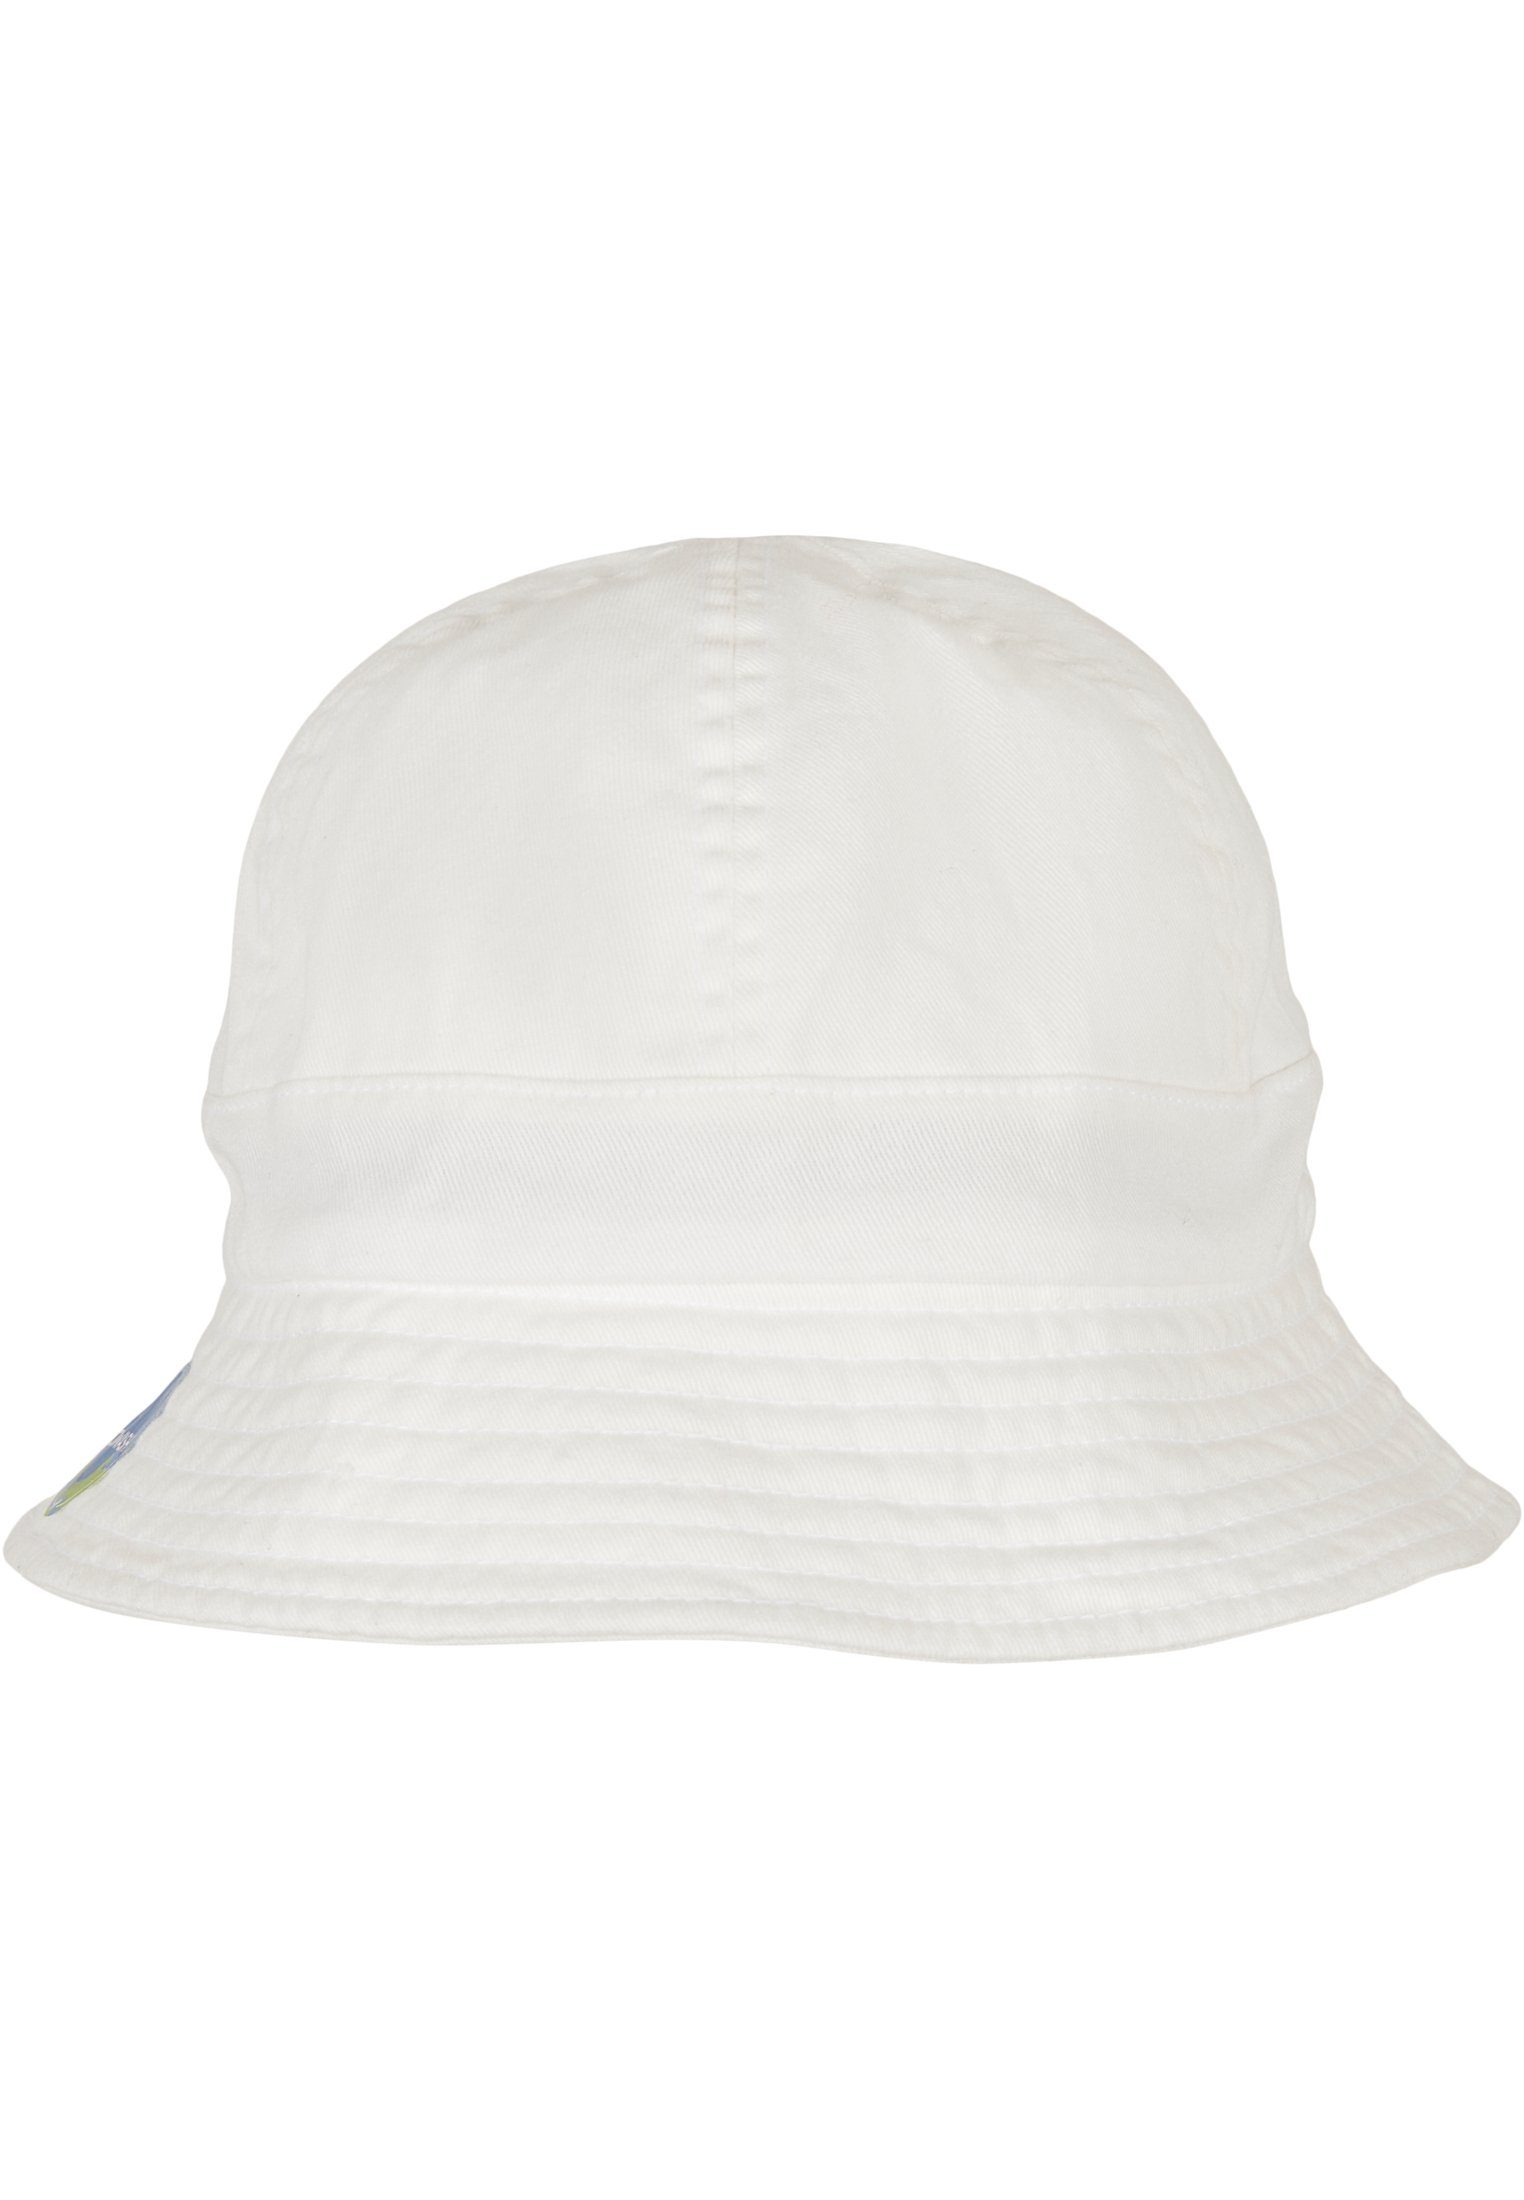 Tennis Hat white Notop Flexfit Cap Flex Eco Accessoires Washing Flexfit